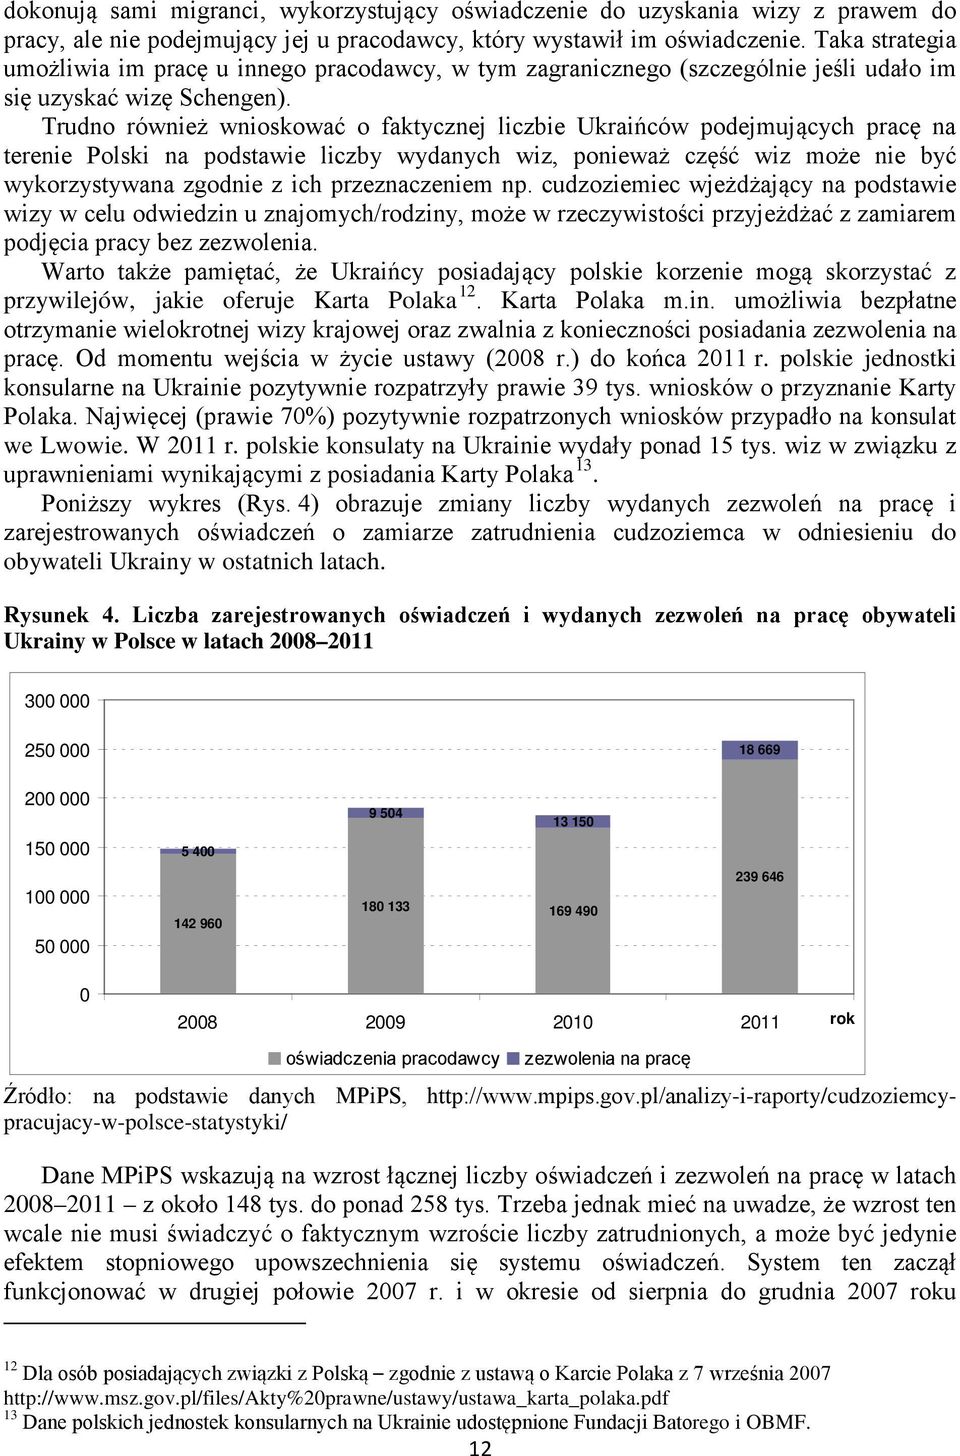 Trudno również wnioskować o faktycznej liczbie Ukraińców podejmujących pracę na terenie Polski na podstawie liczby wydanych wiz, ponieważ część wiz może nie być wykorzystywana zgodnie z ich